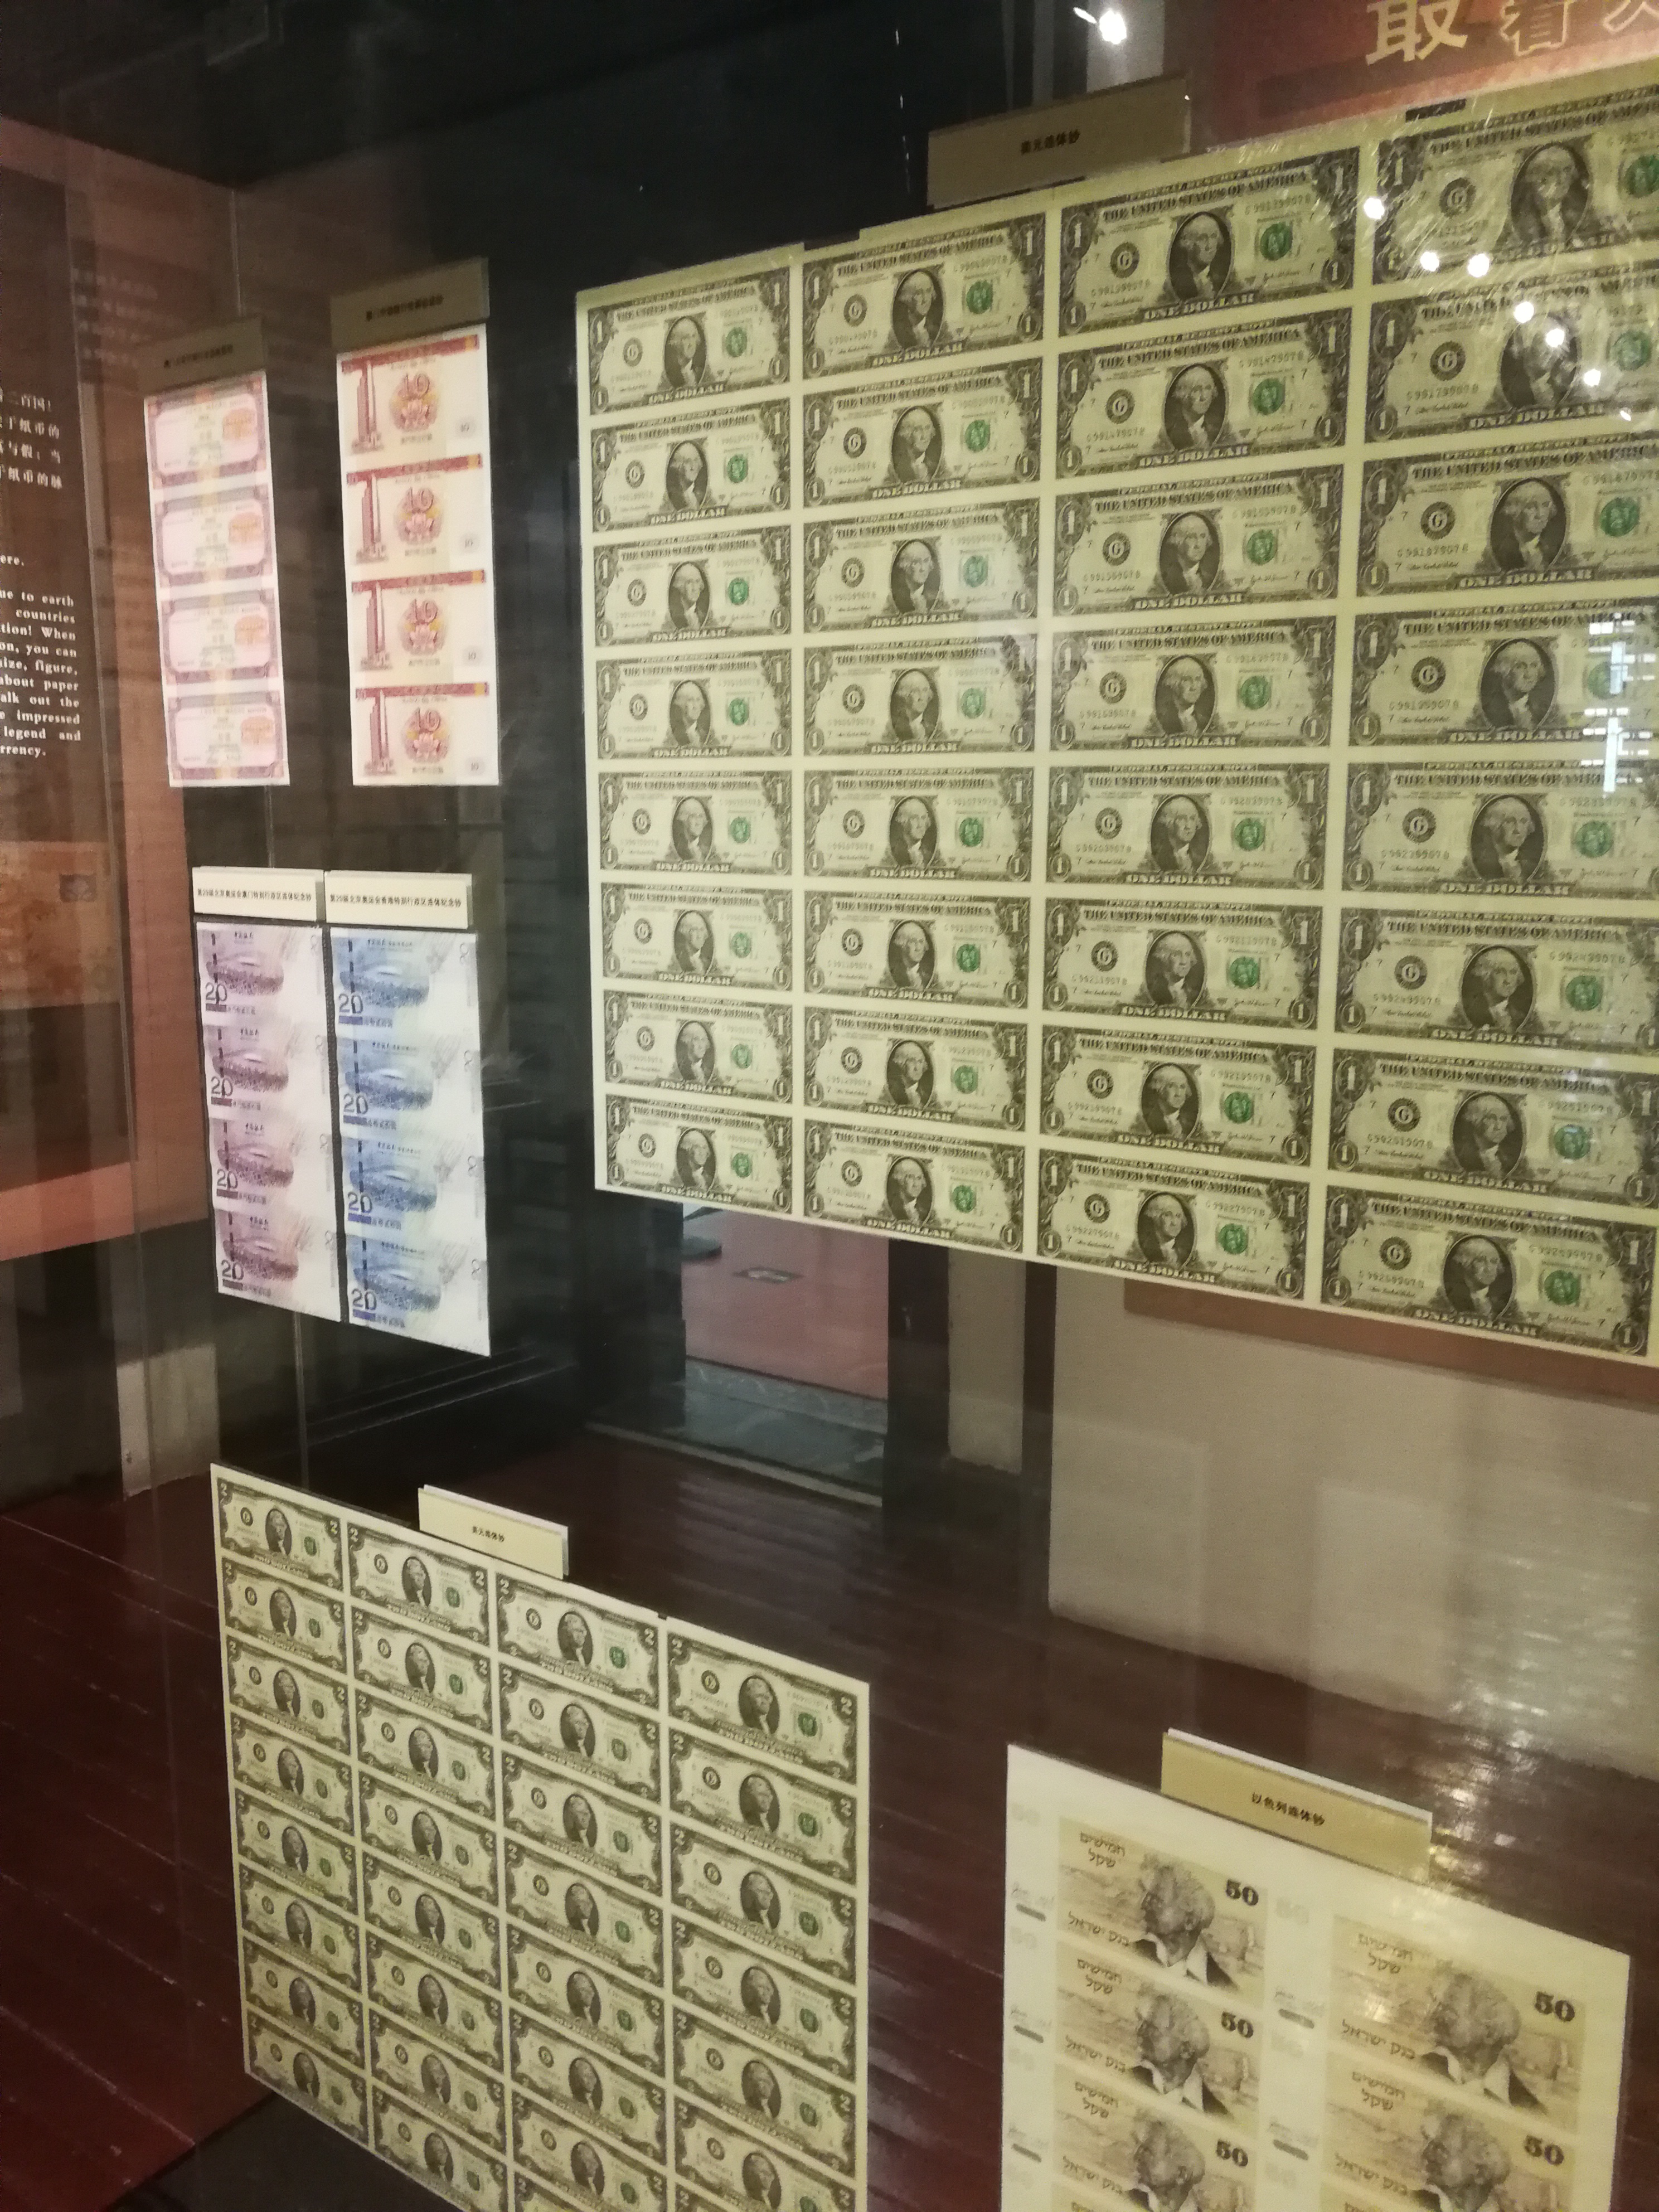 沈阳市博物馆里的货币墙,表着各国的纸币和连体钞